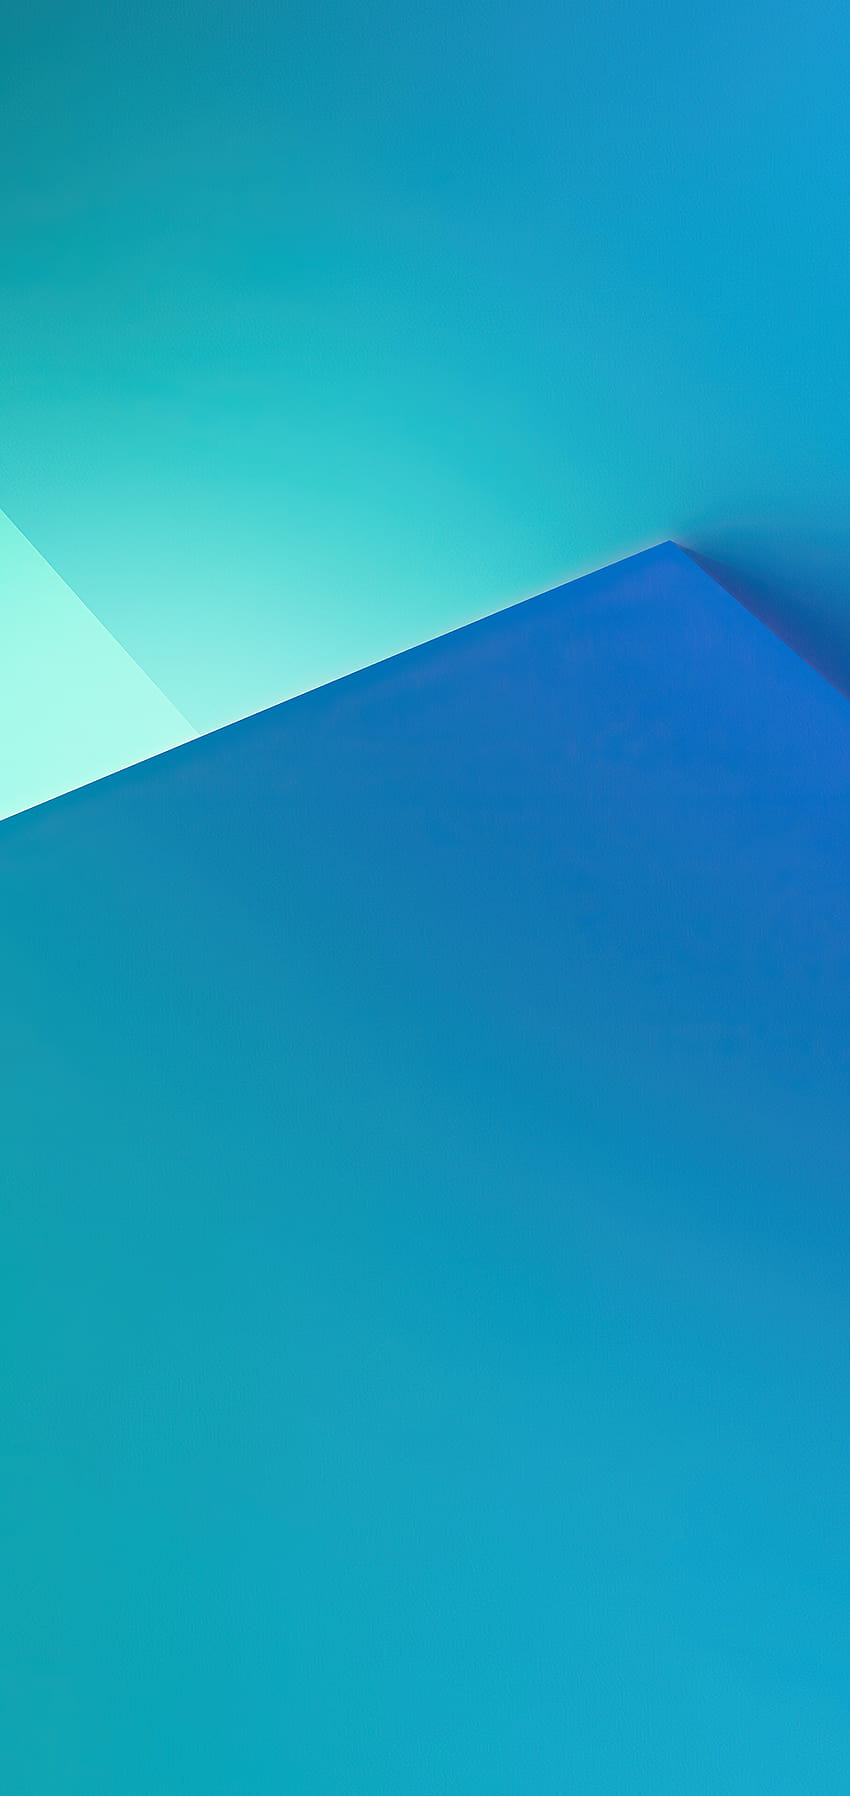 Android, Blue, Rectangle, Slope, Aqua, Backgrounds, aqua color HD phone wallpaper